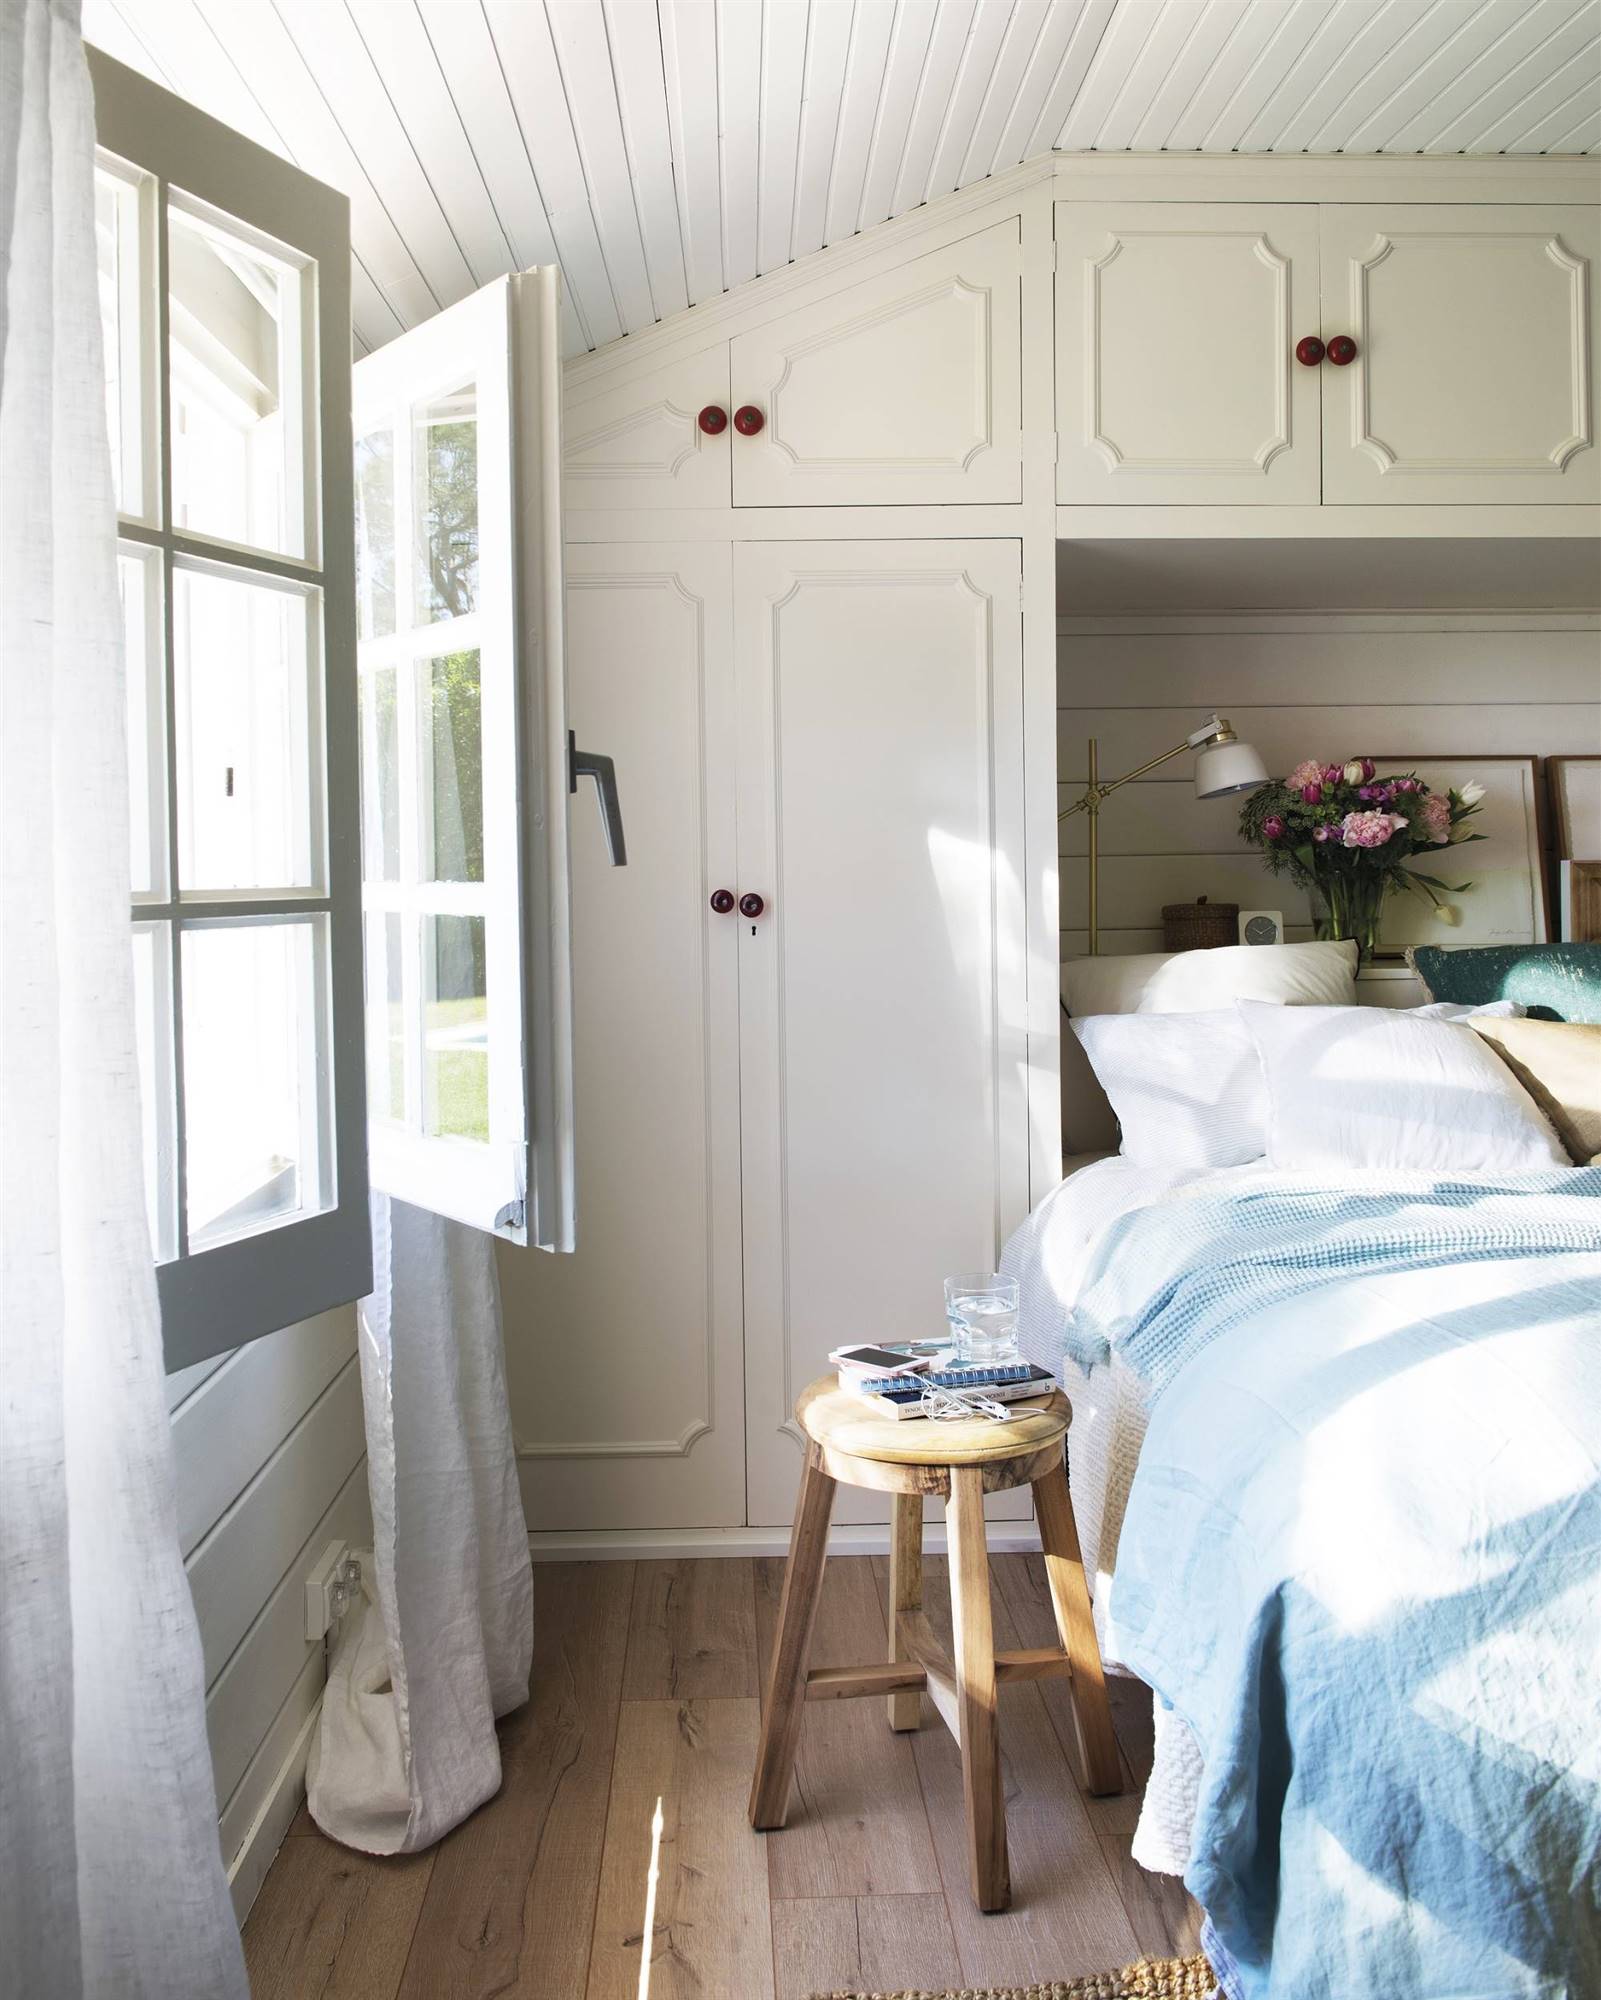 Dormitorio con armario a medida de color blanco que rodea el cabecero - 00458455